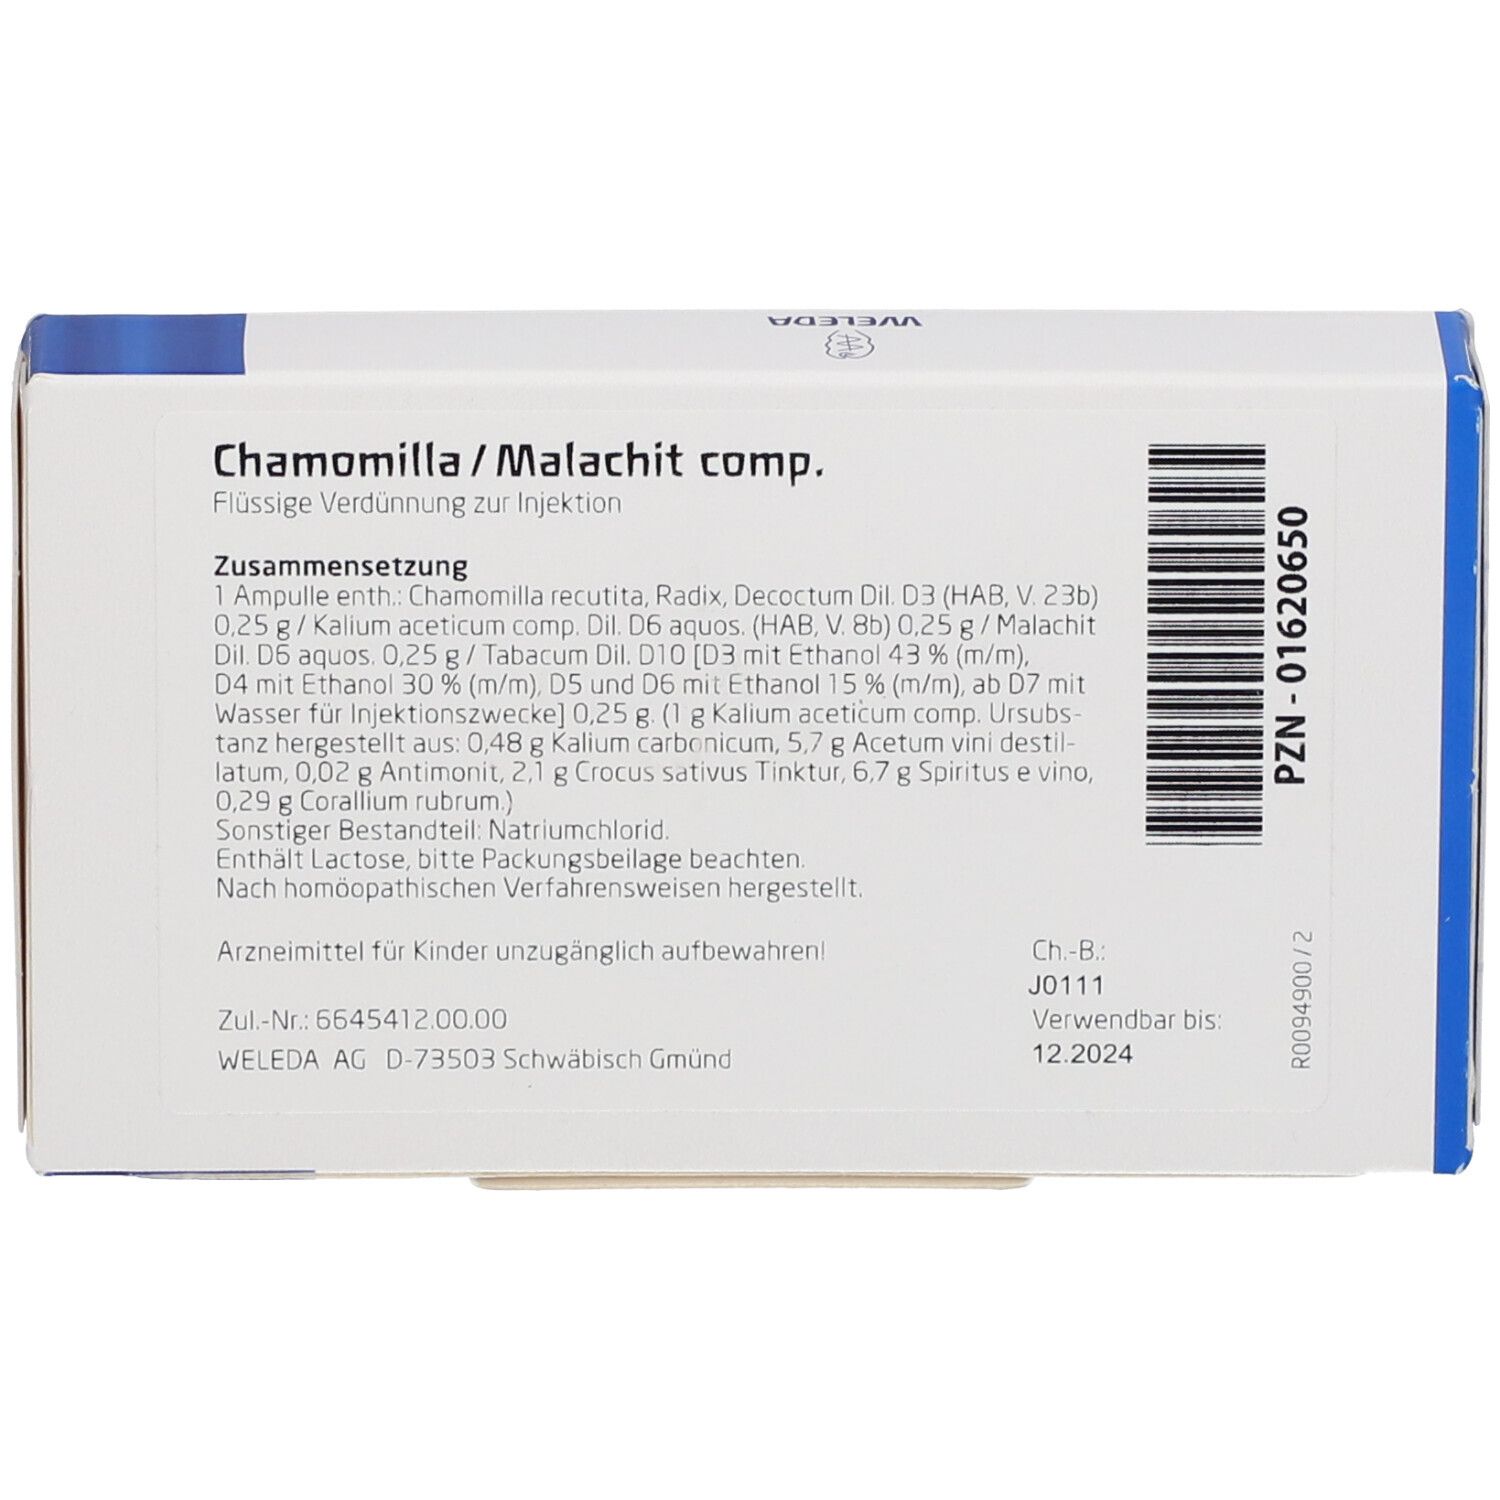 Chamomilla / Malachit comp.